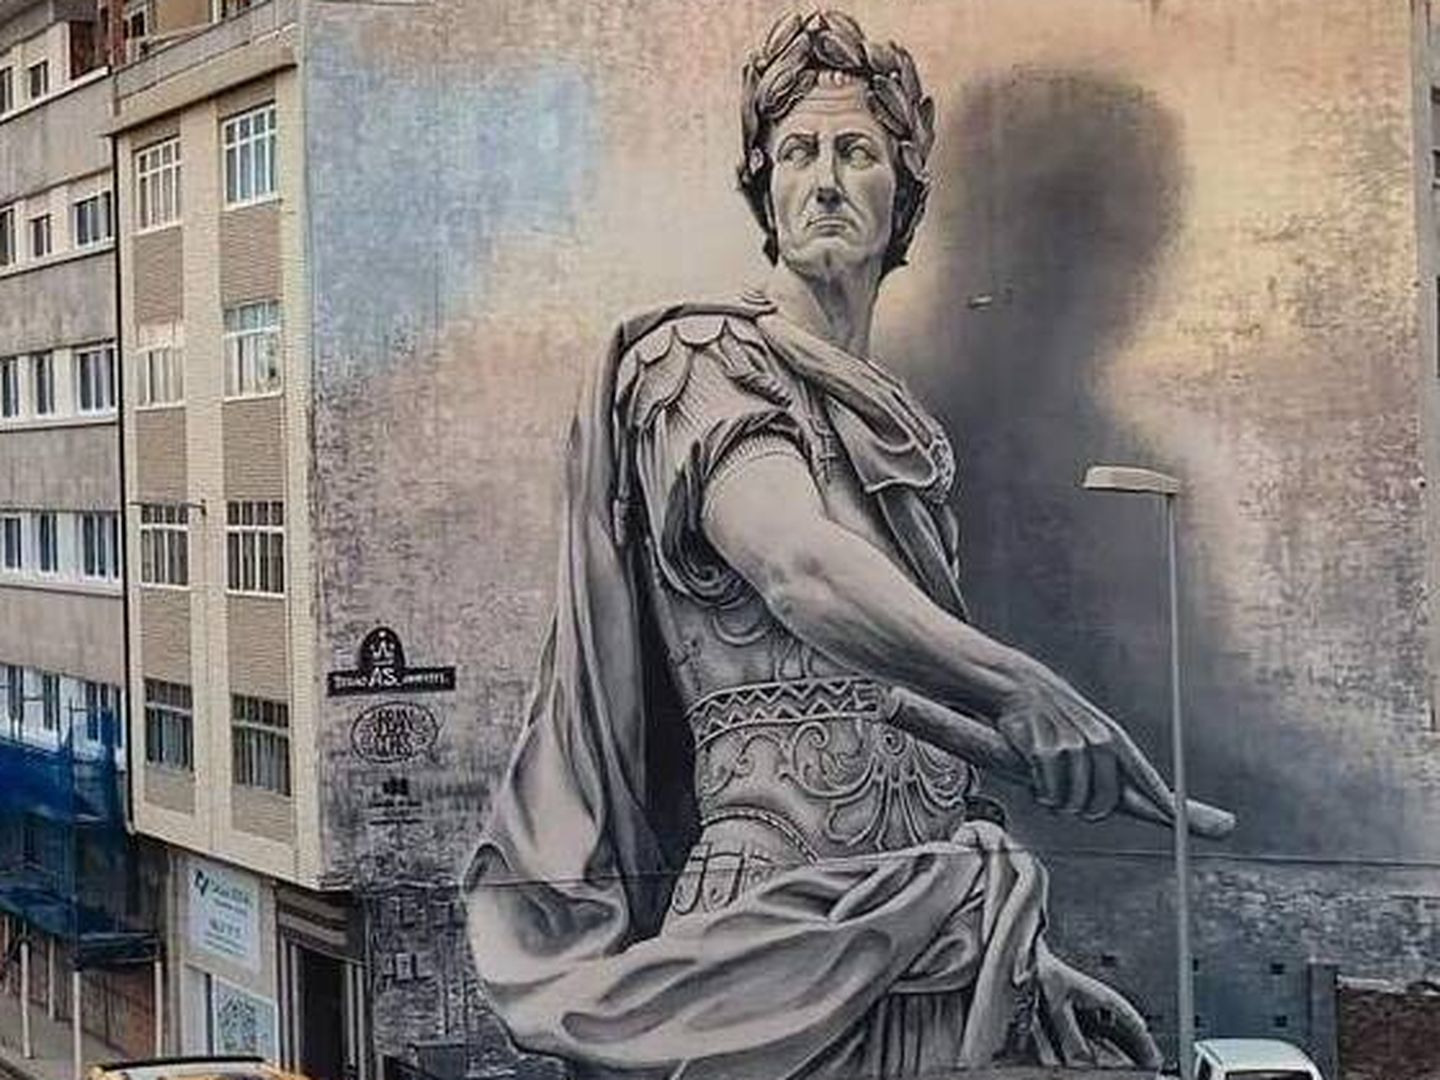 El mural del Julio César en Lugo, obra de Diego AS